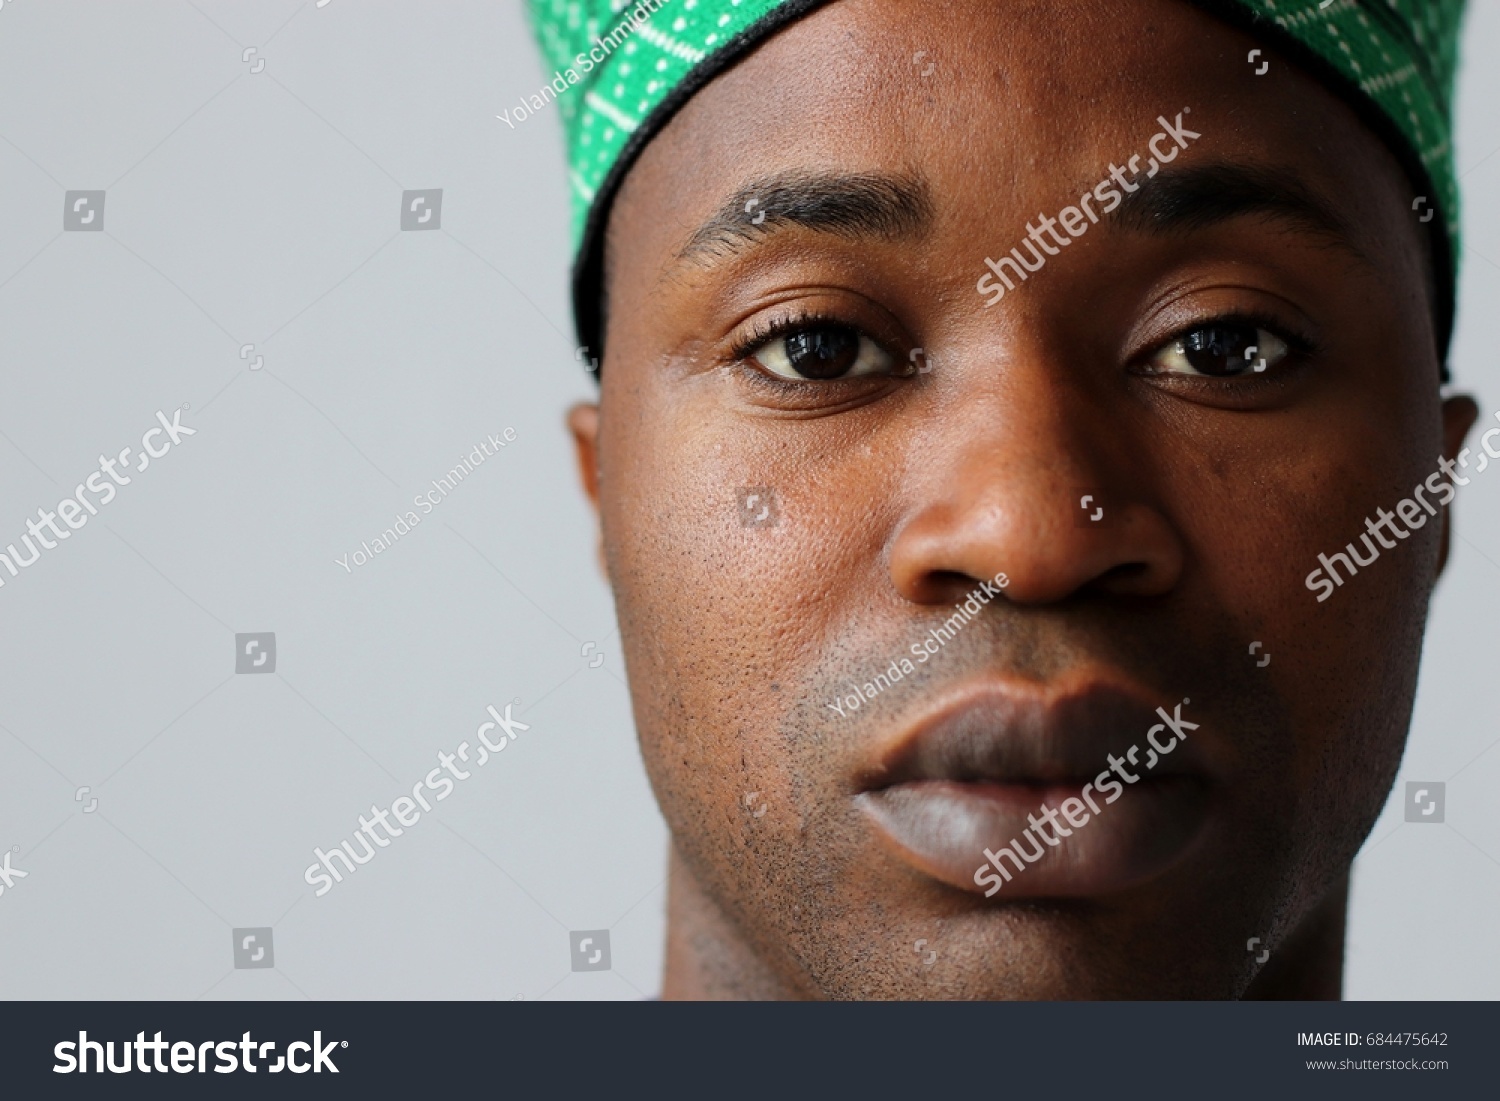 黒人の若いアフリカ人の顔 ナイジェリア人の伝統的な帽子をかぶった男性 の写真素材 今すぐ編集